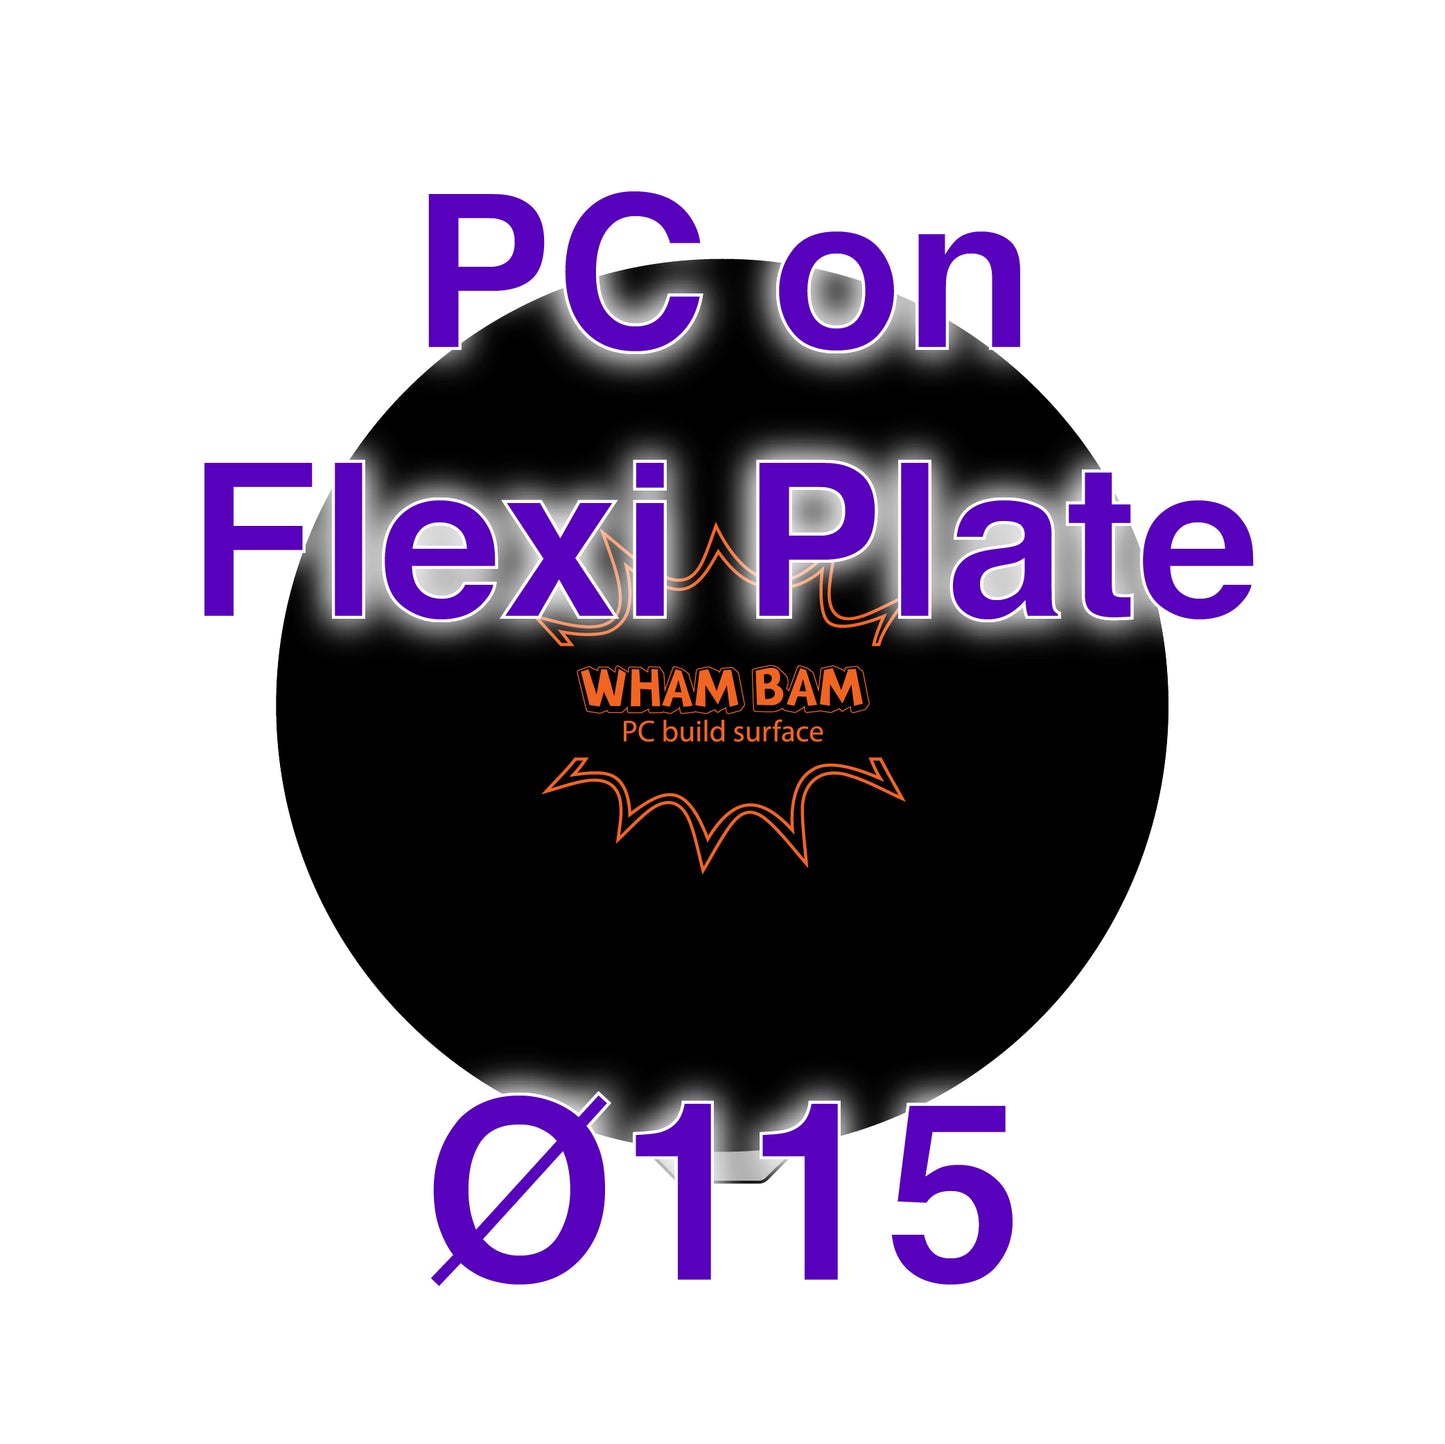 Flexi Plate with PC - MonoPrice Mini Delta -  Ø115